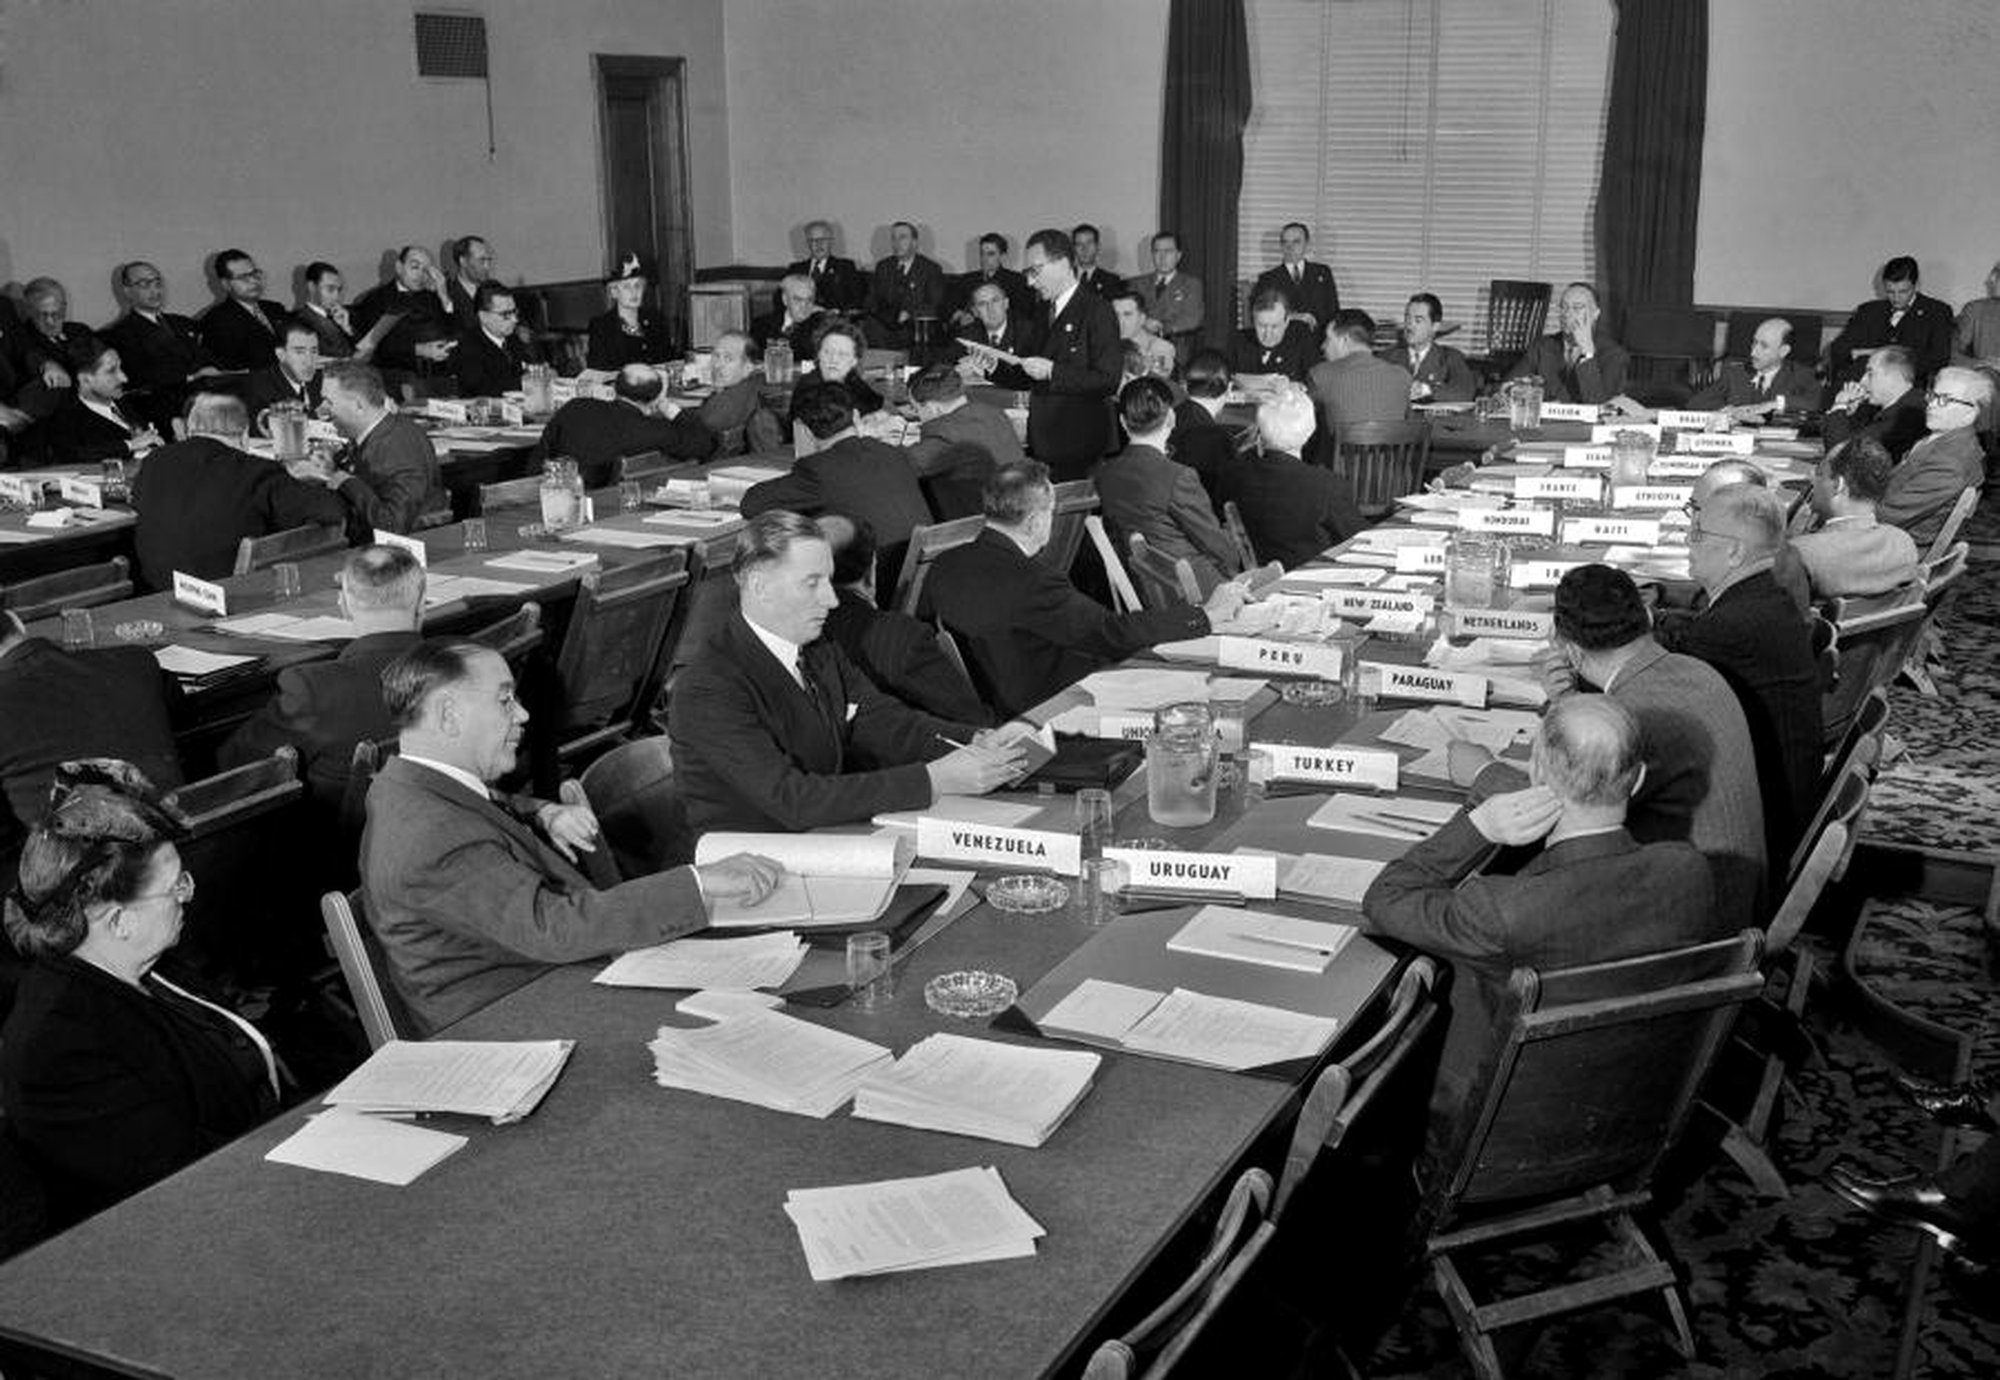 Imagens da Conferência de São Francisco (1945) em que se debateram os princípios que iriam estar contemplados na Carta das Nações Unidas.
Fonte: Organização das Nações Unidas.